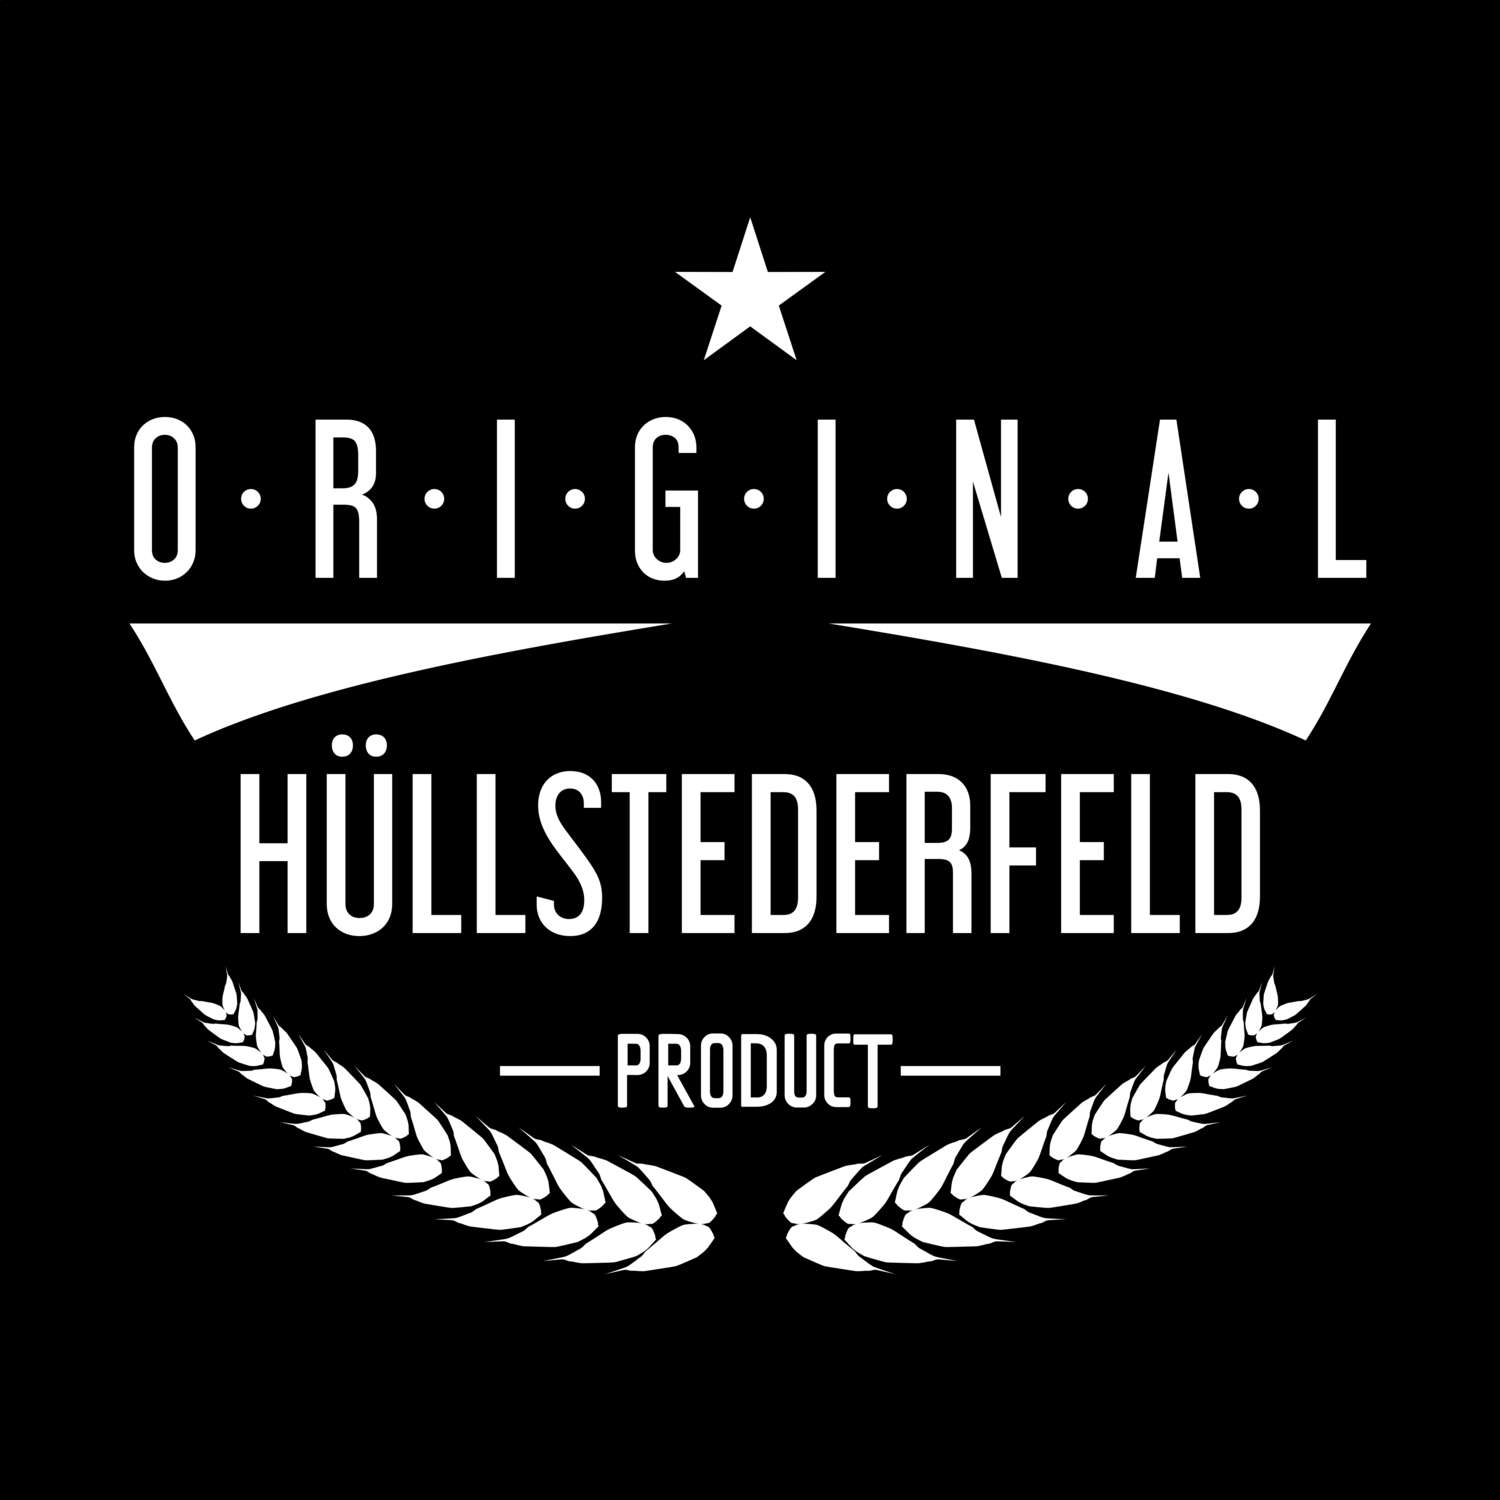 Hüllstederfeld T-Shirt »Original Product«